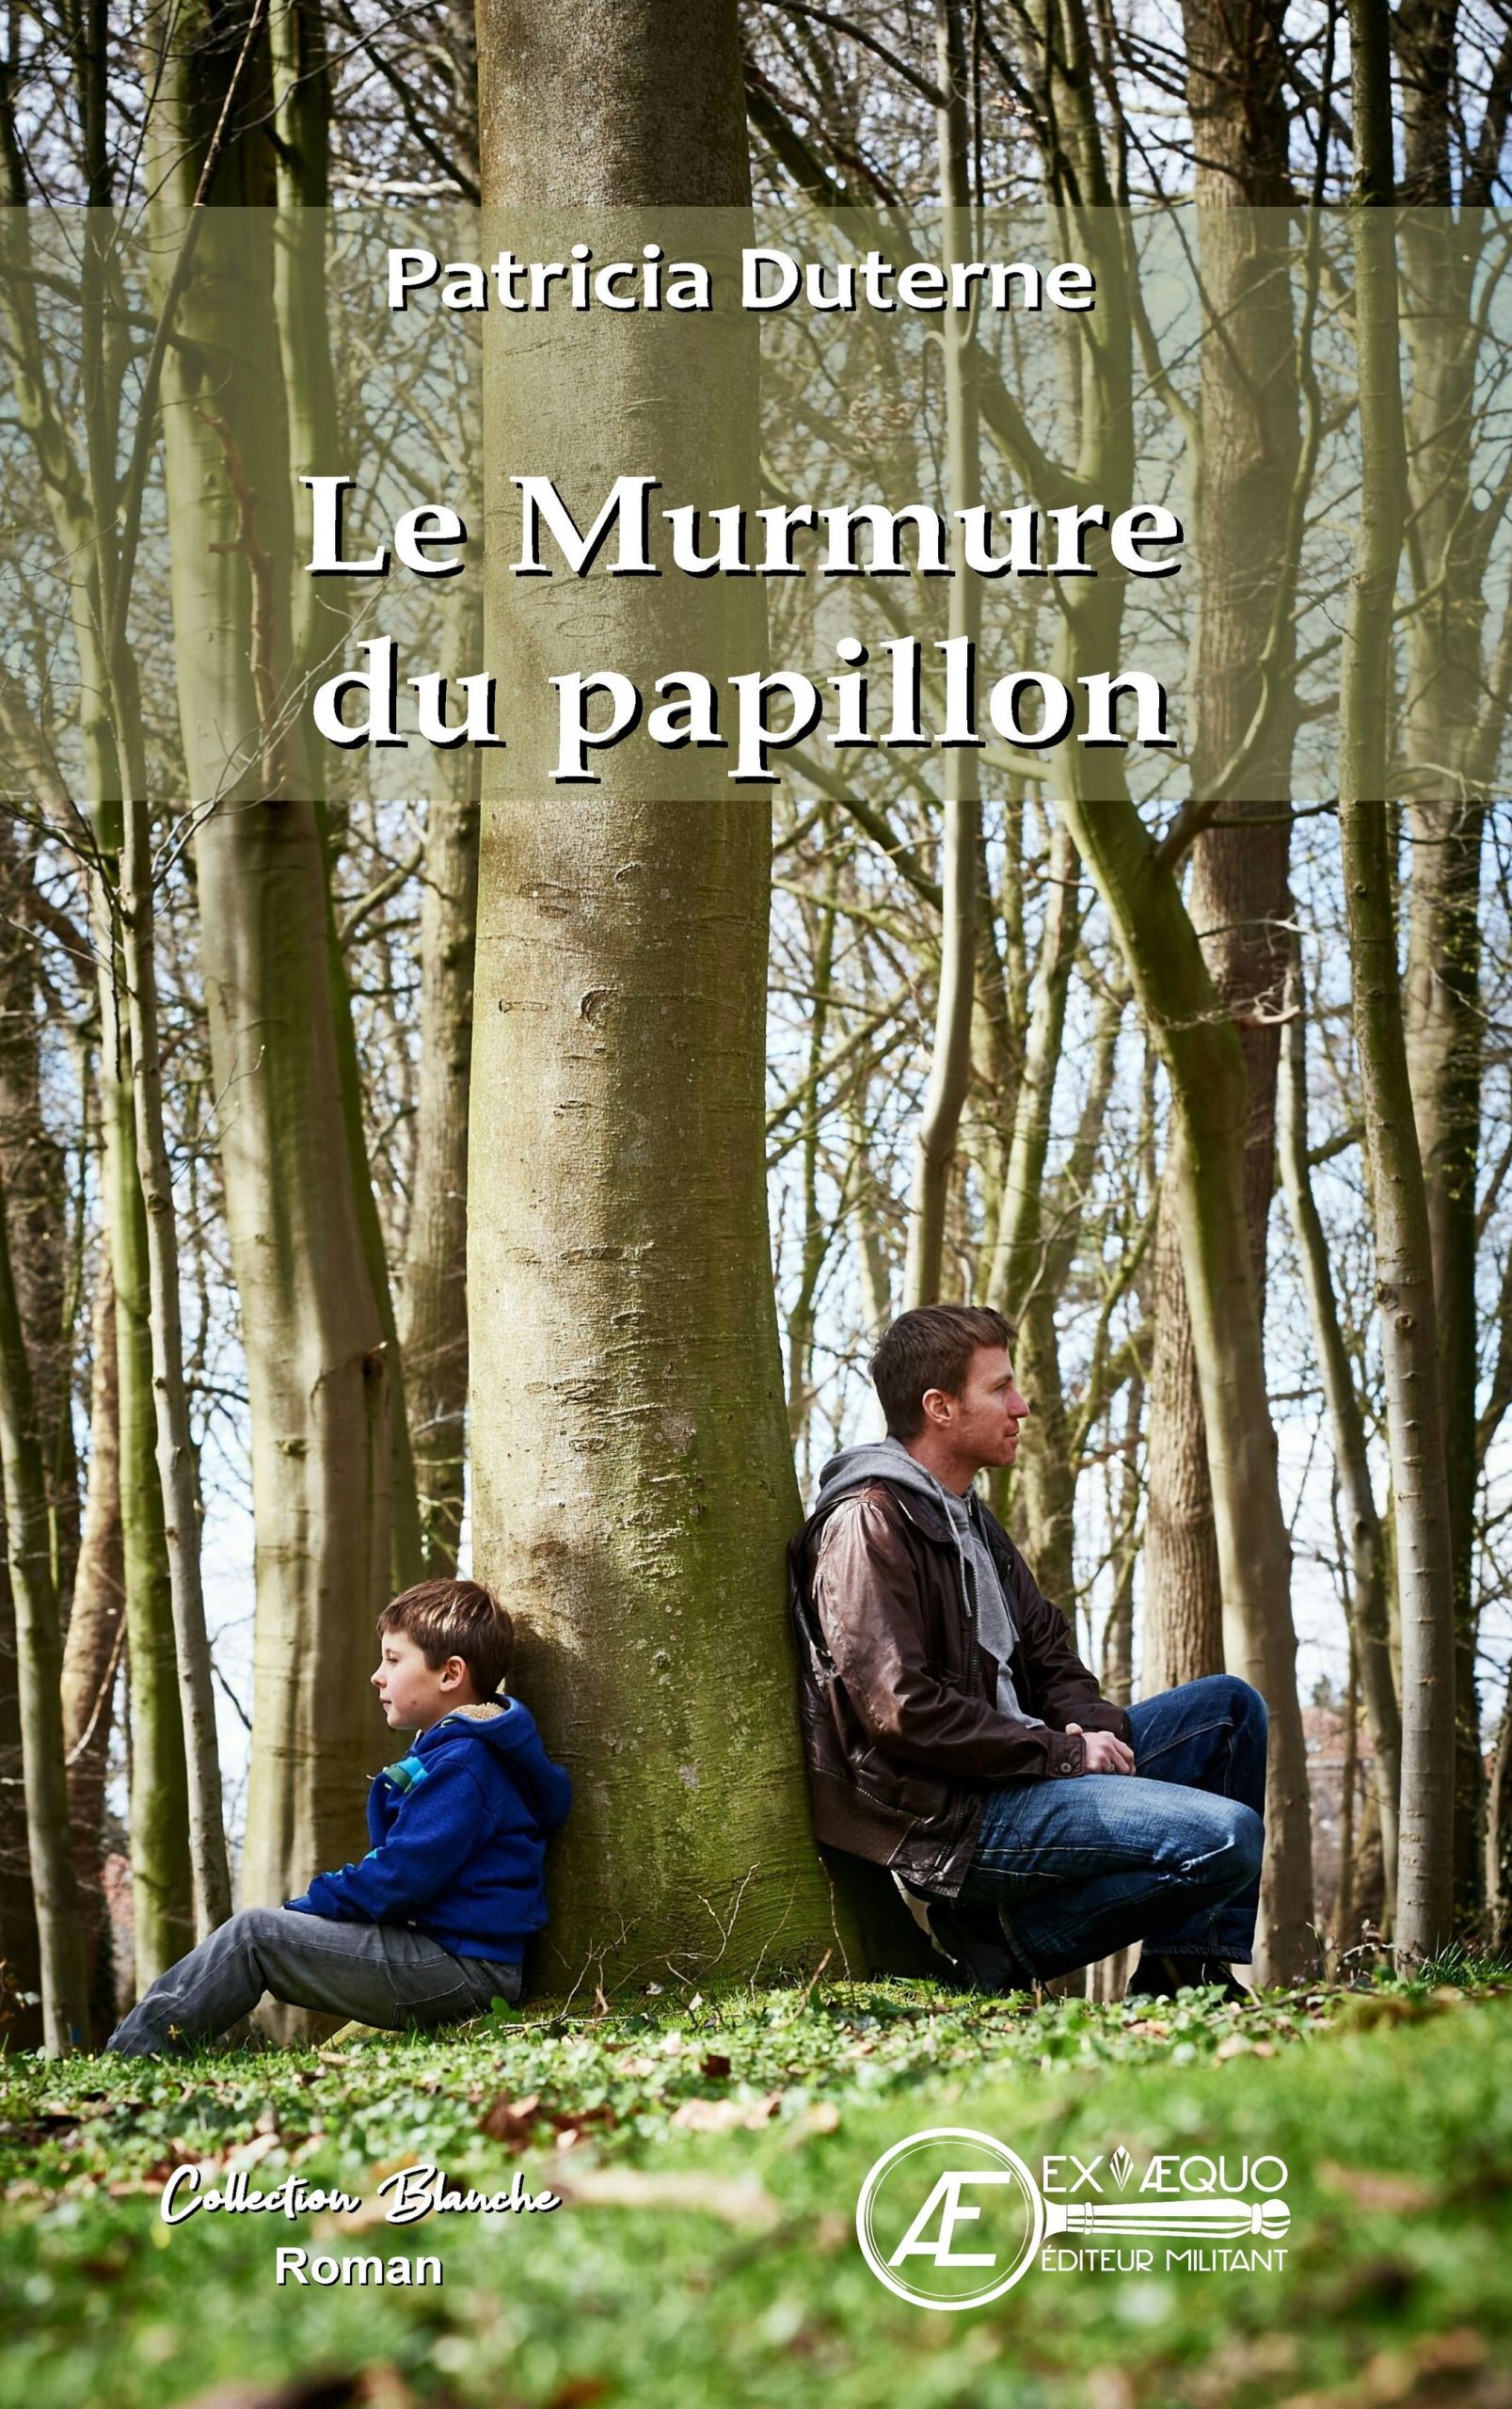 You are currently viewing Le murmure du papillon, de Patricia Duterne